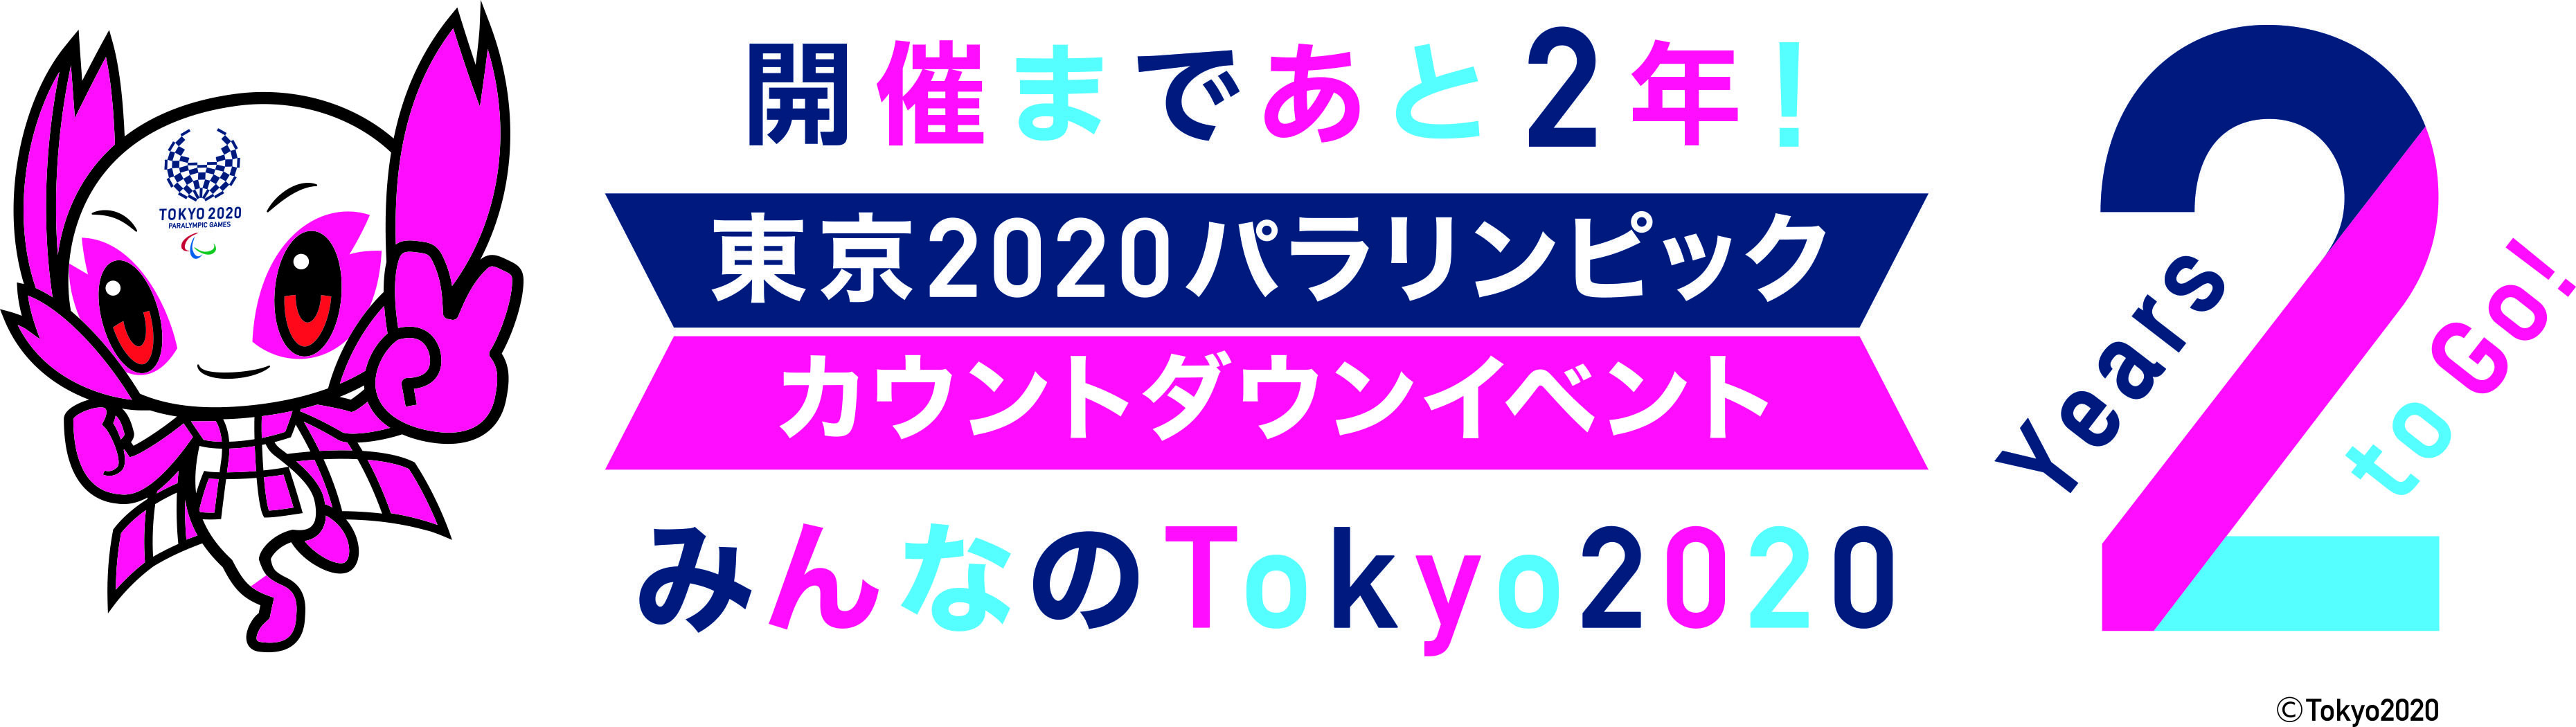 8月25日（土）に開催される『みんなの Tokyo 2020 2 Years to Go！』